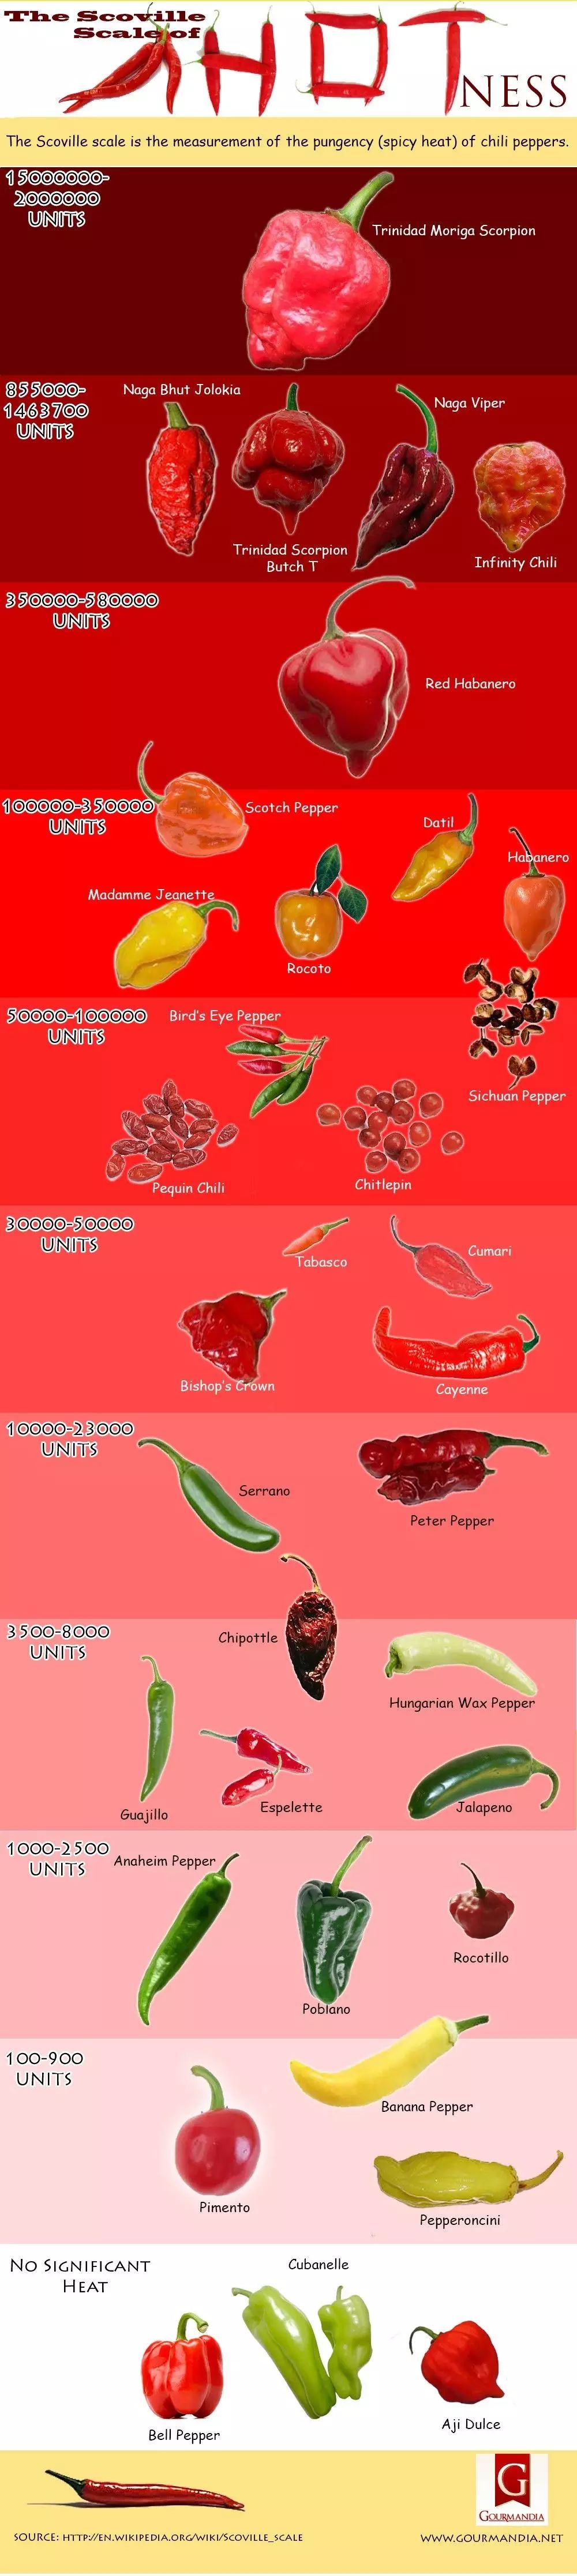 花椒(sichuan pepper),其辣度比卡宴辣椒高,这证明了"麻比辣厉害"是有